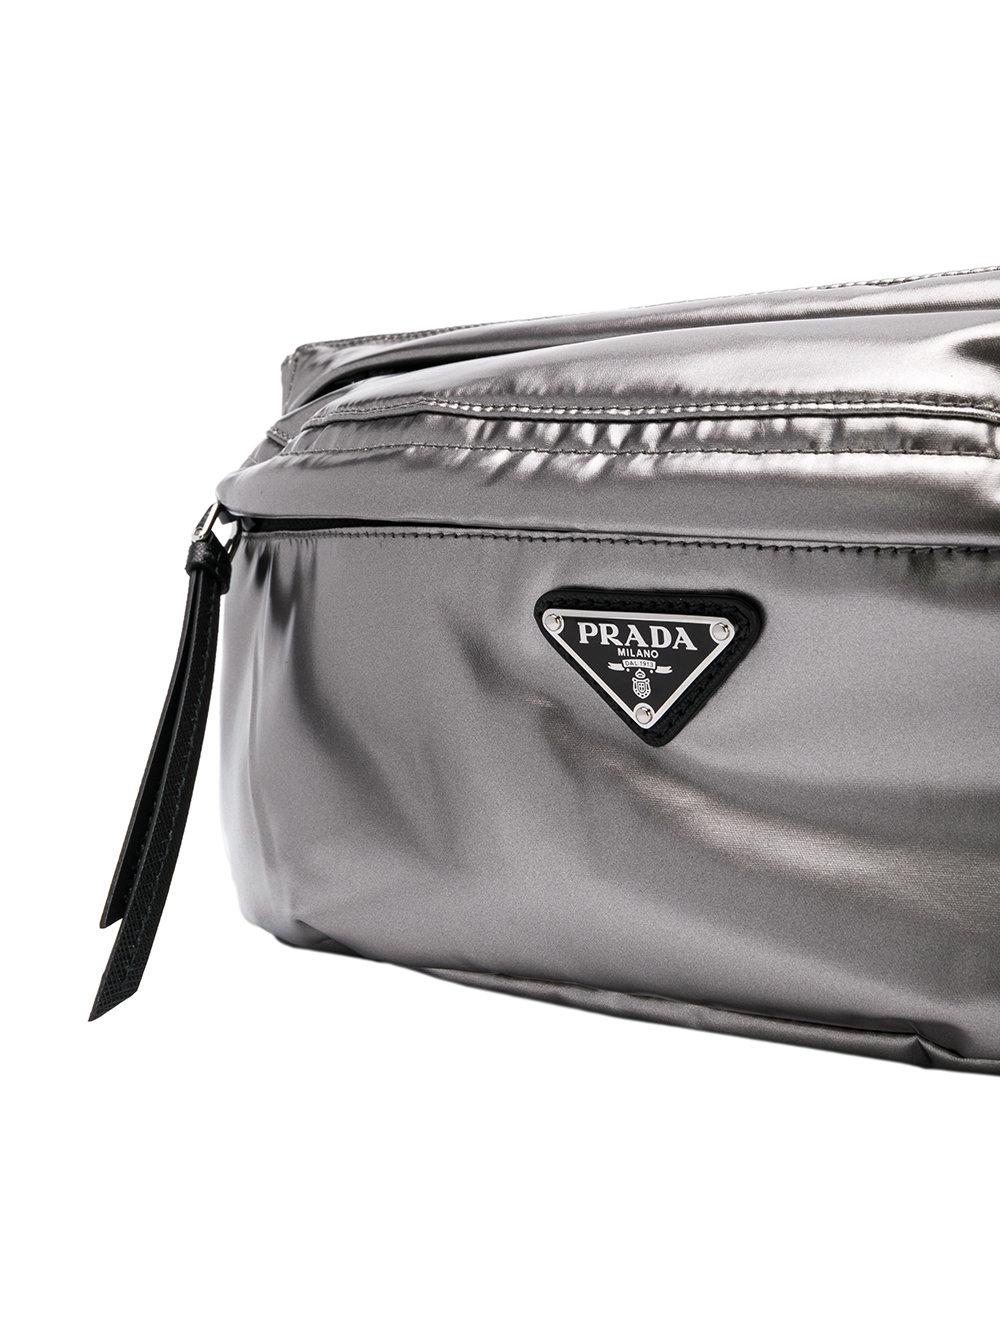 prada silver belt bag, OFF 73%,www 